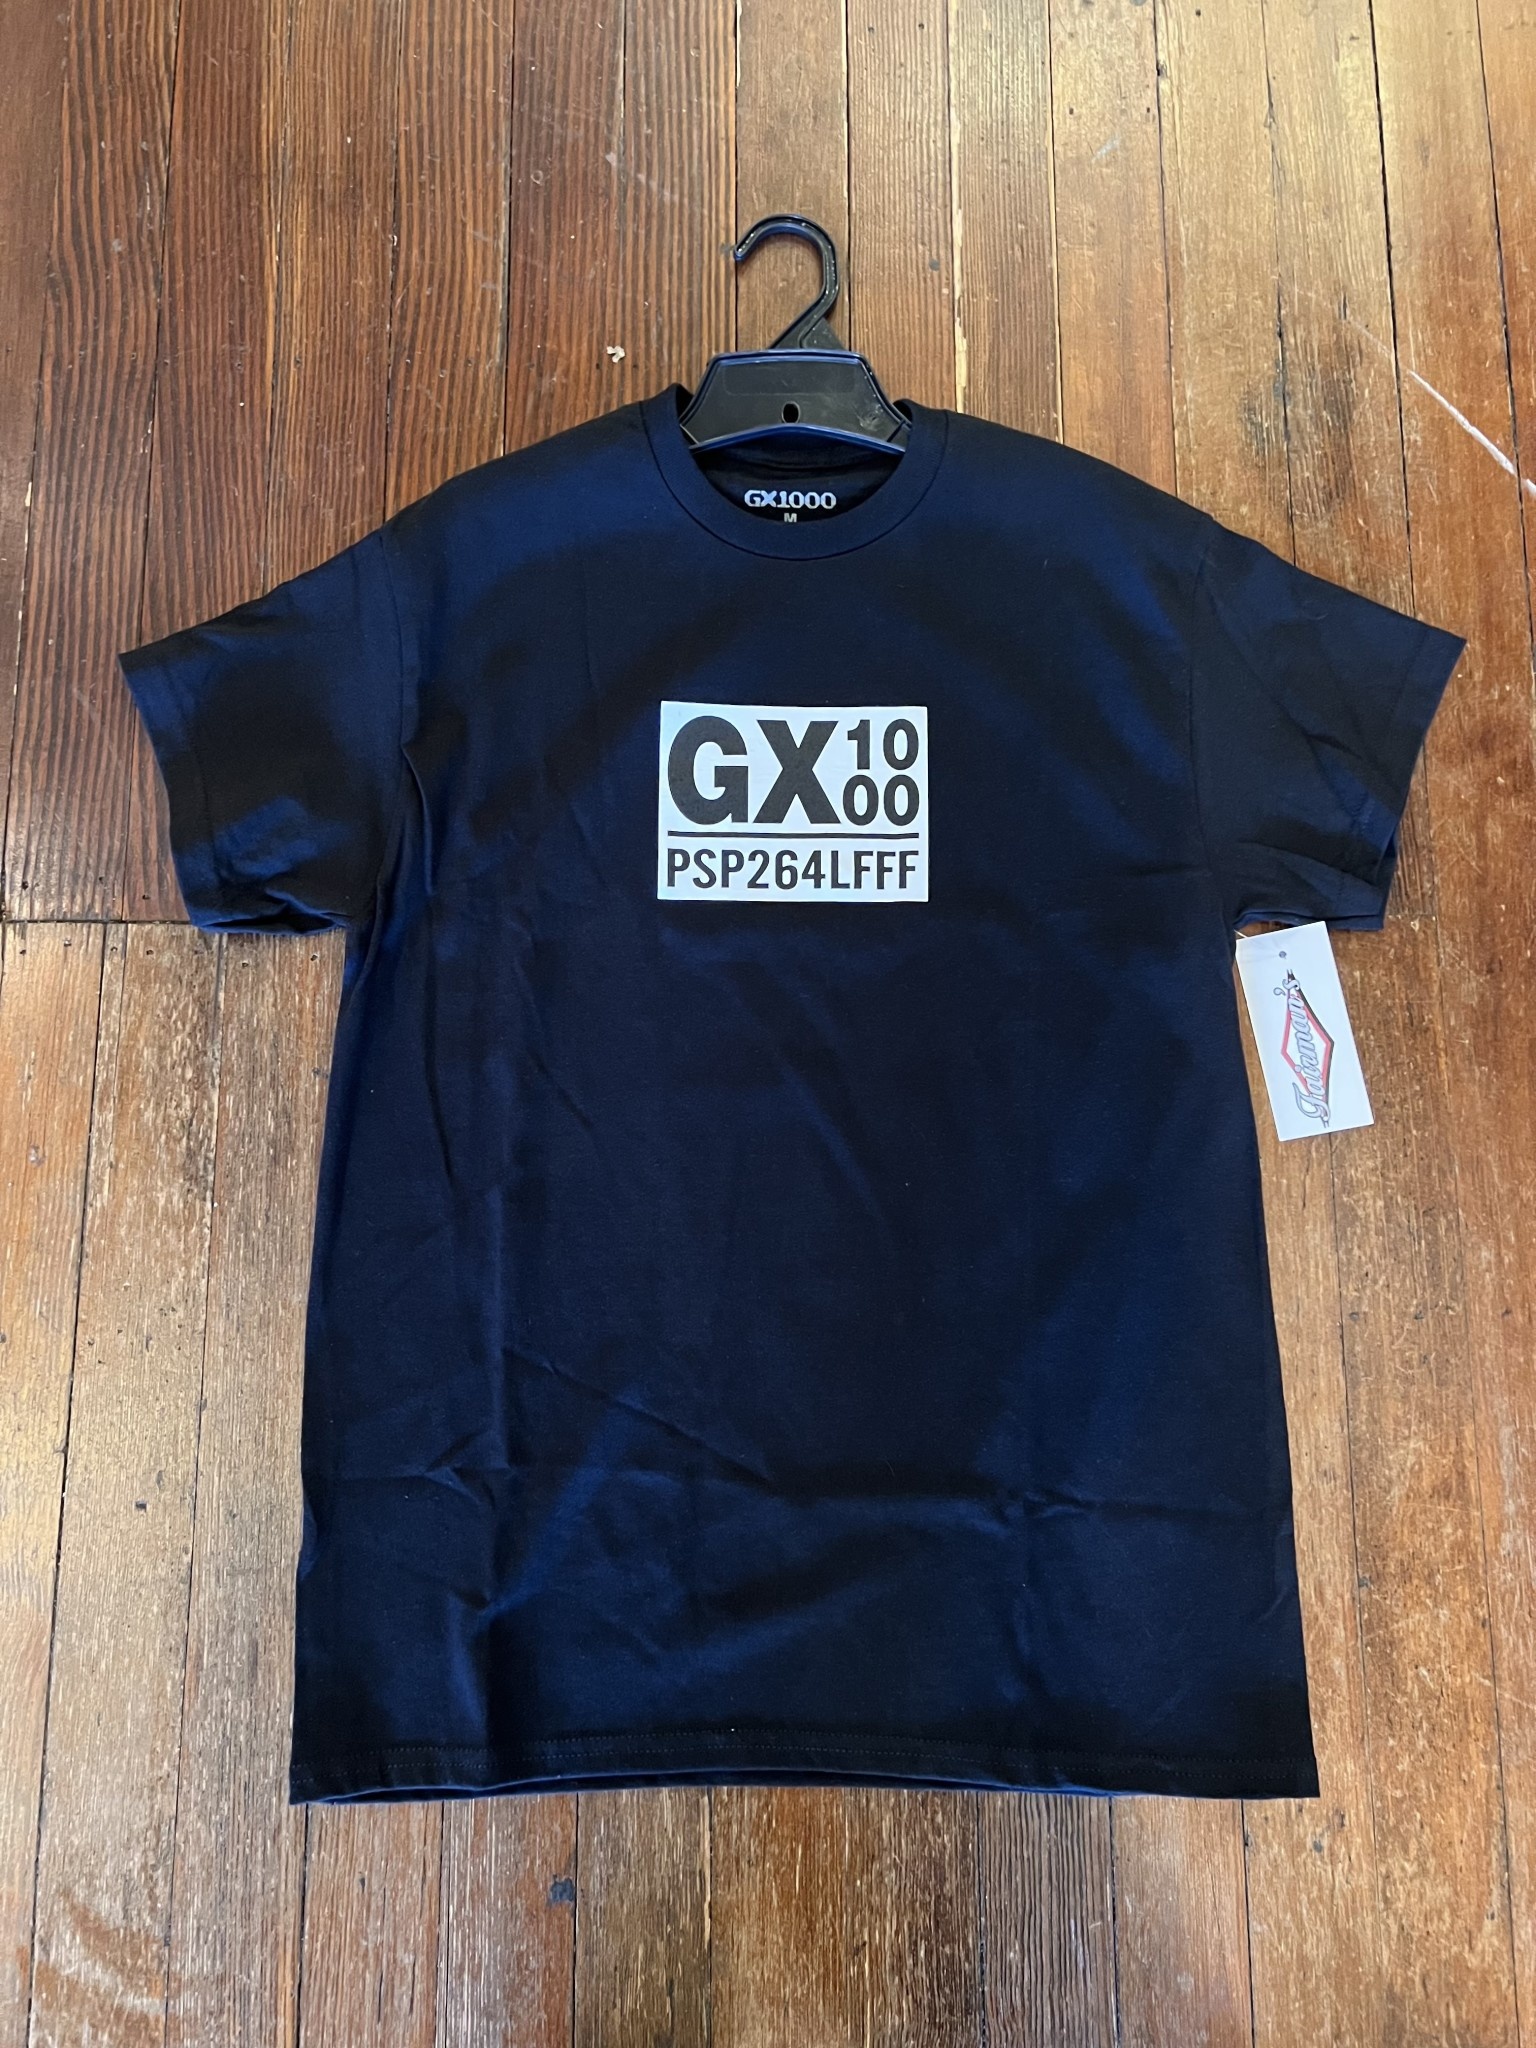 GX1000 PSP T-Shirt - Fairmans